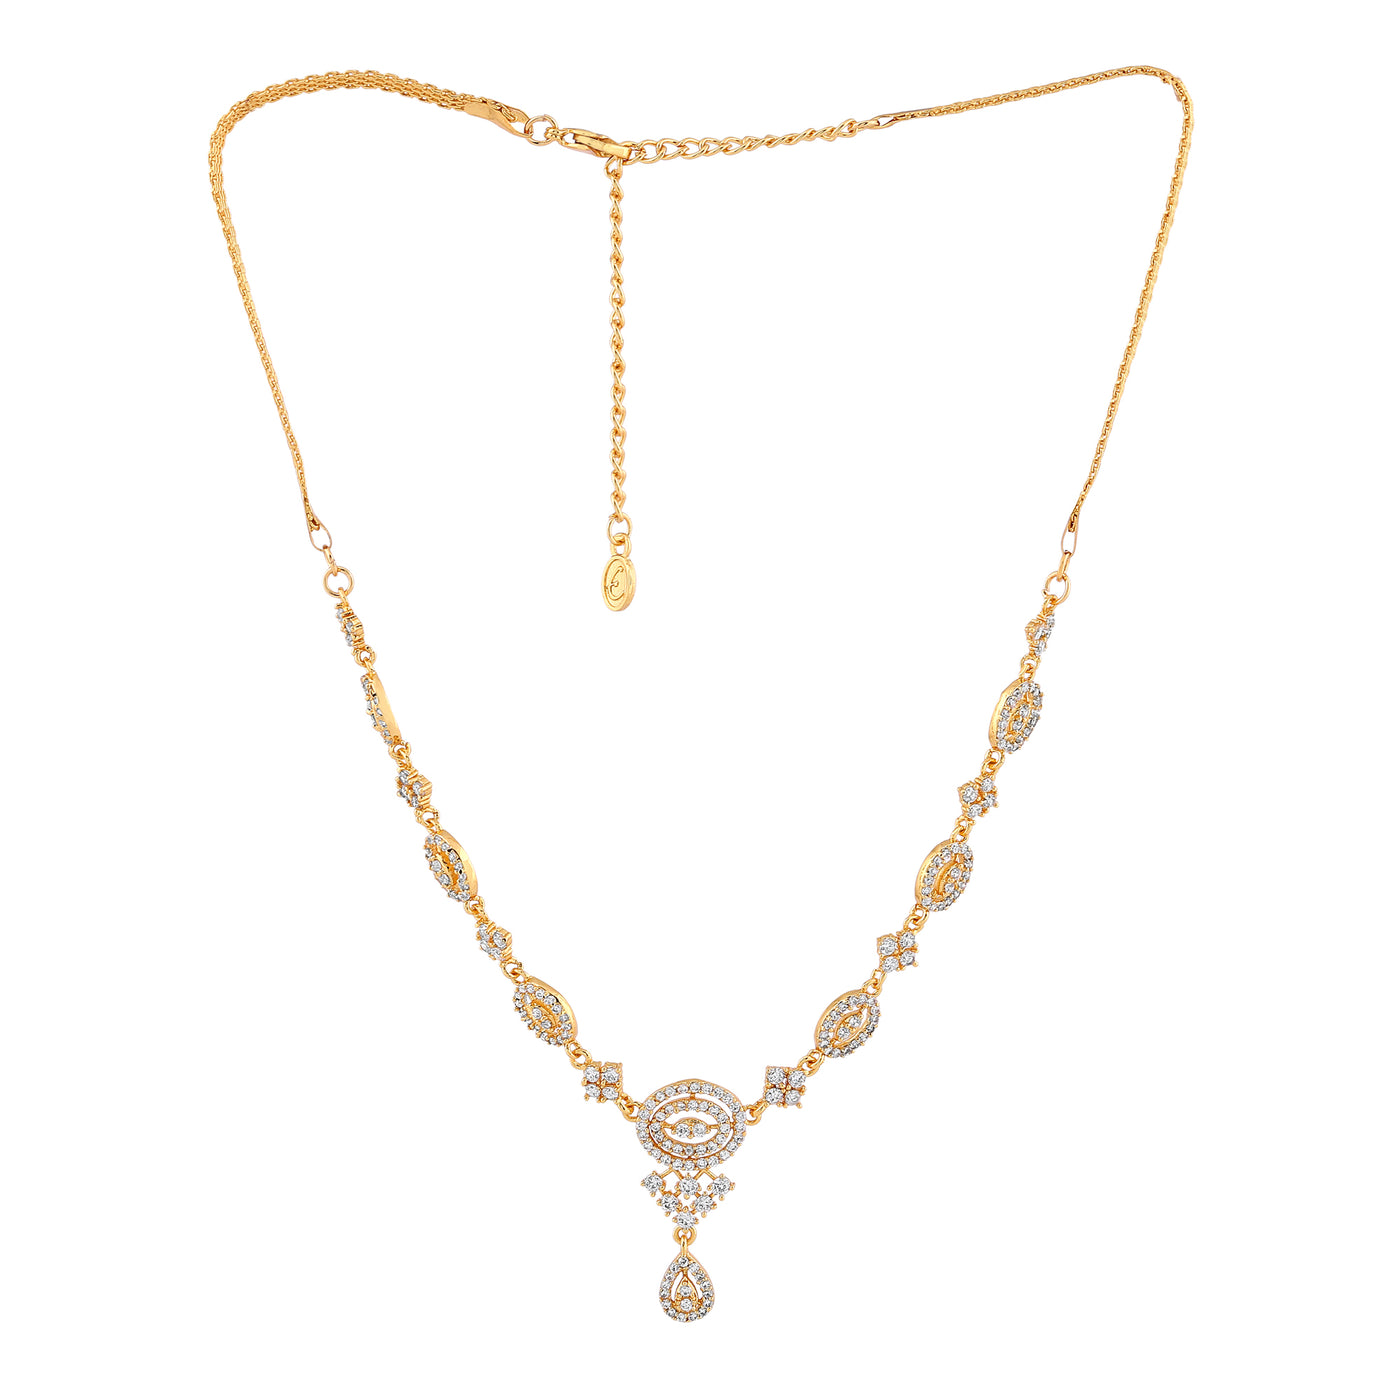 Estele - Zubeida Diamante gold place Necklace set